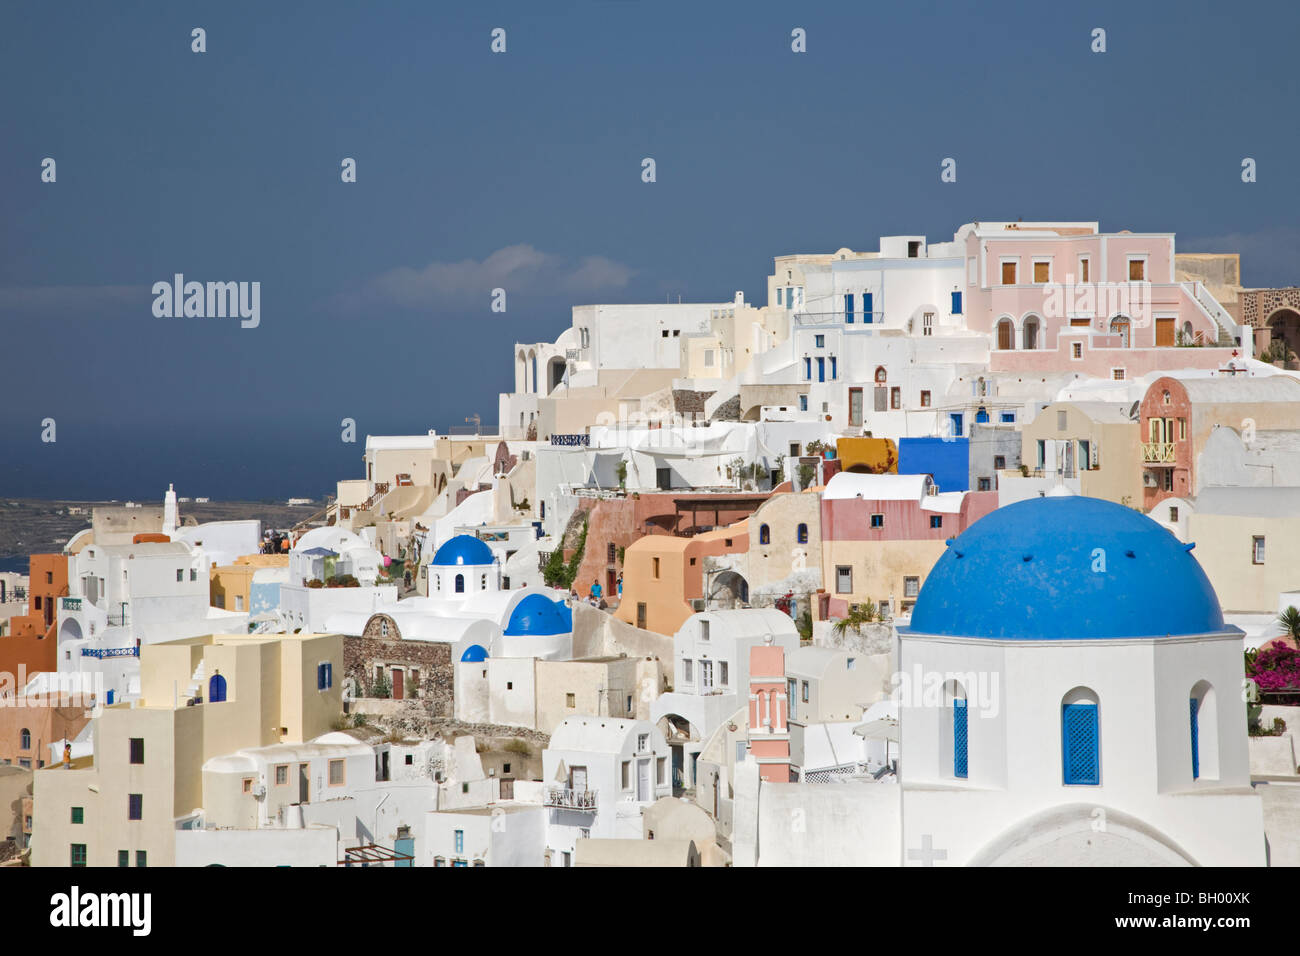 Dorf Oia auf der Insel Santorini, Stadtbild mit blauer Kuppel und weißer Kirche in Griechenland Stockfoto